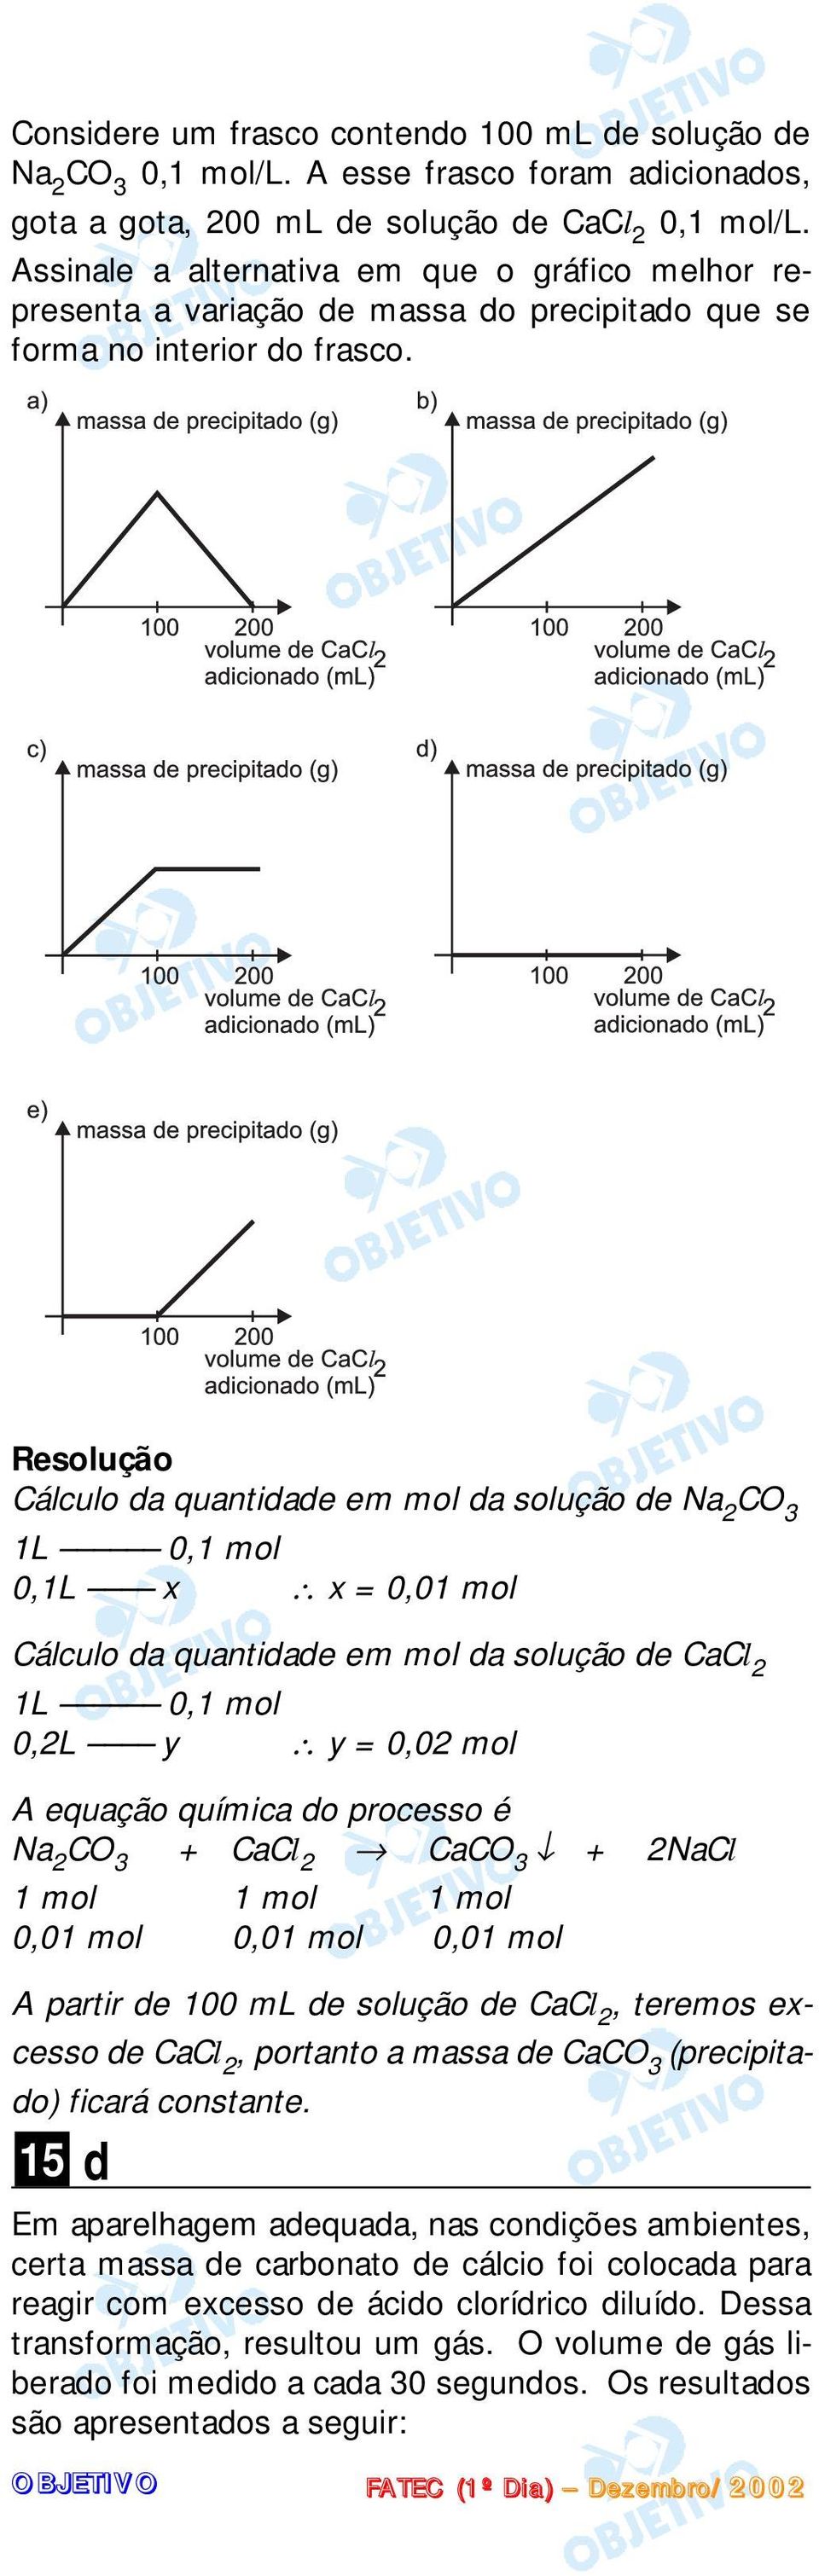 Cálculo da quantidade em mol da solução de Na 2 CO 3 1L 0,1 mol 0,1L x x = 0,01 mol Cálculo da quantidade em mol da solução de CaCl 2 1L 0,1 mol 0,2L y y = 0,02 mol A equação química do processo é Na